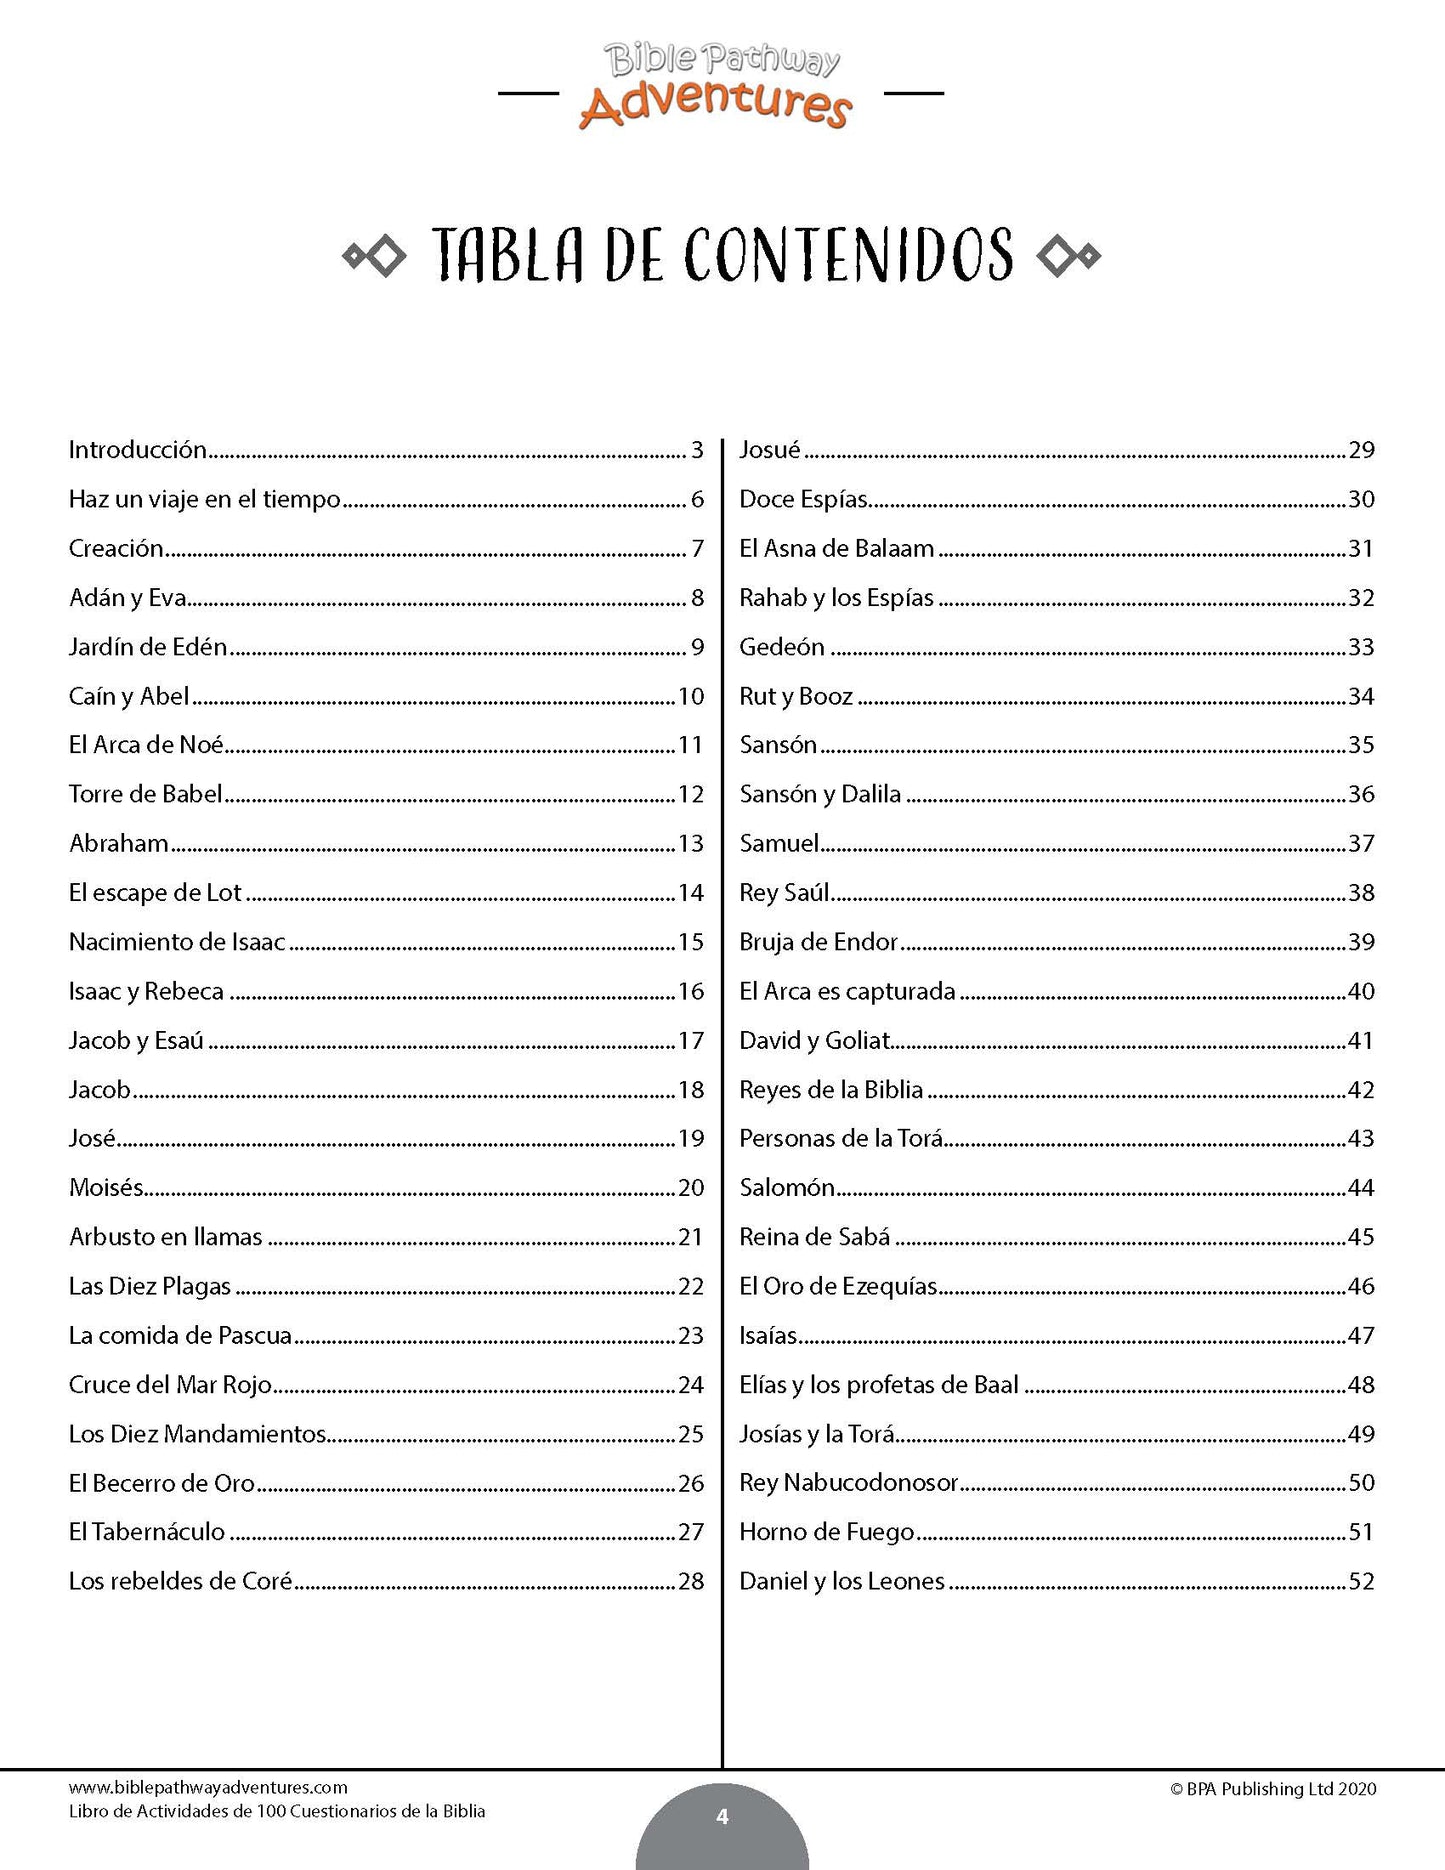 Libro de actividades de 100 cuestionarios de la Biblia (paperback)